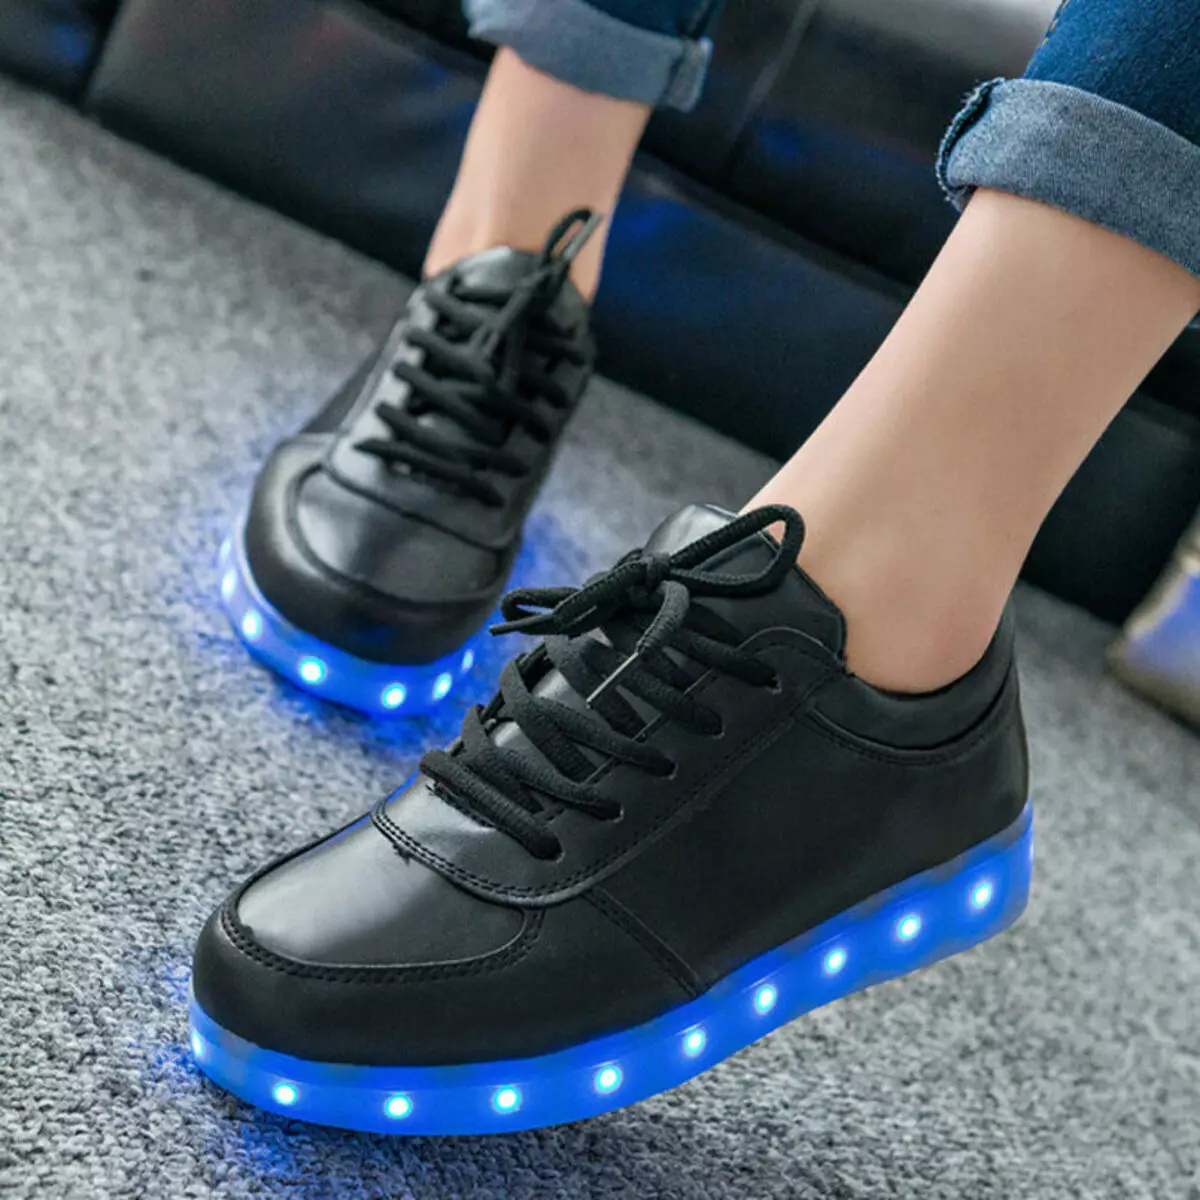 Sneakers Luminous (58 Lluniau): LED a modelau LED, faint o sneakers sydd gyda goleuadau, meintiau ac adolygiadau 2175_6